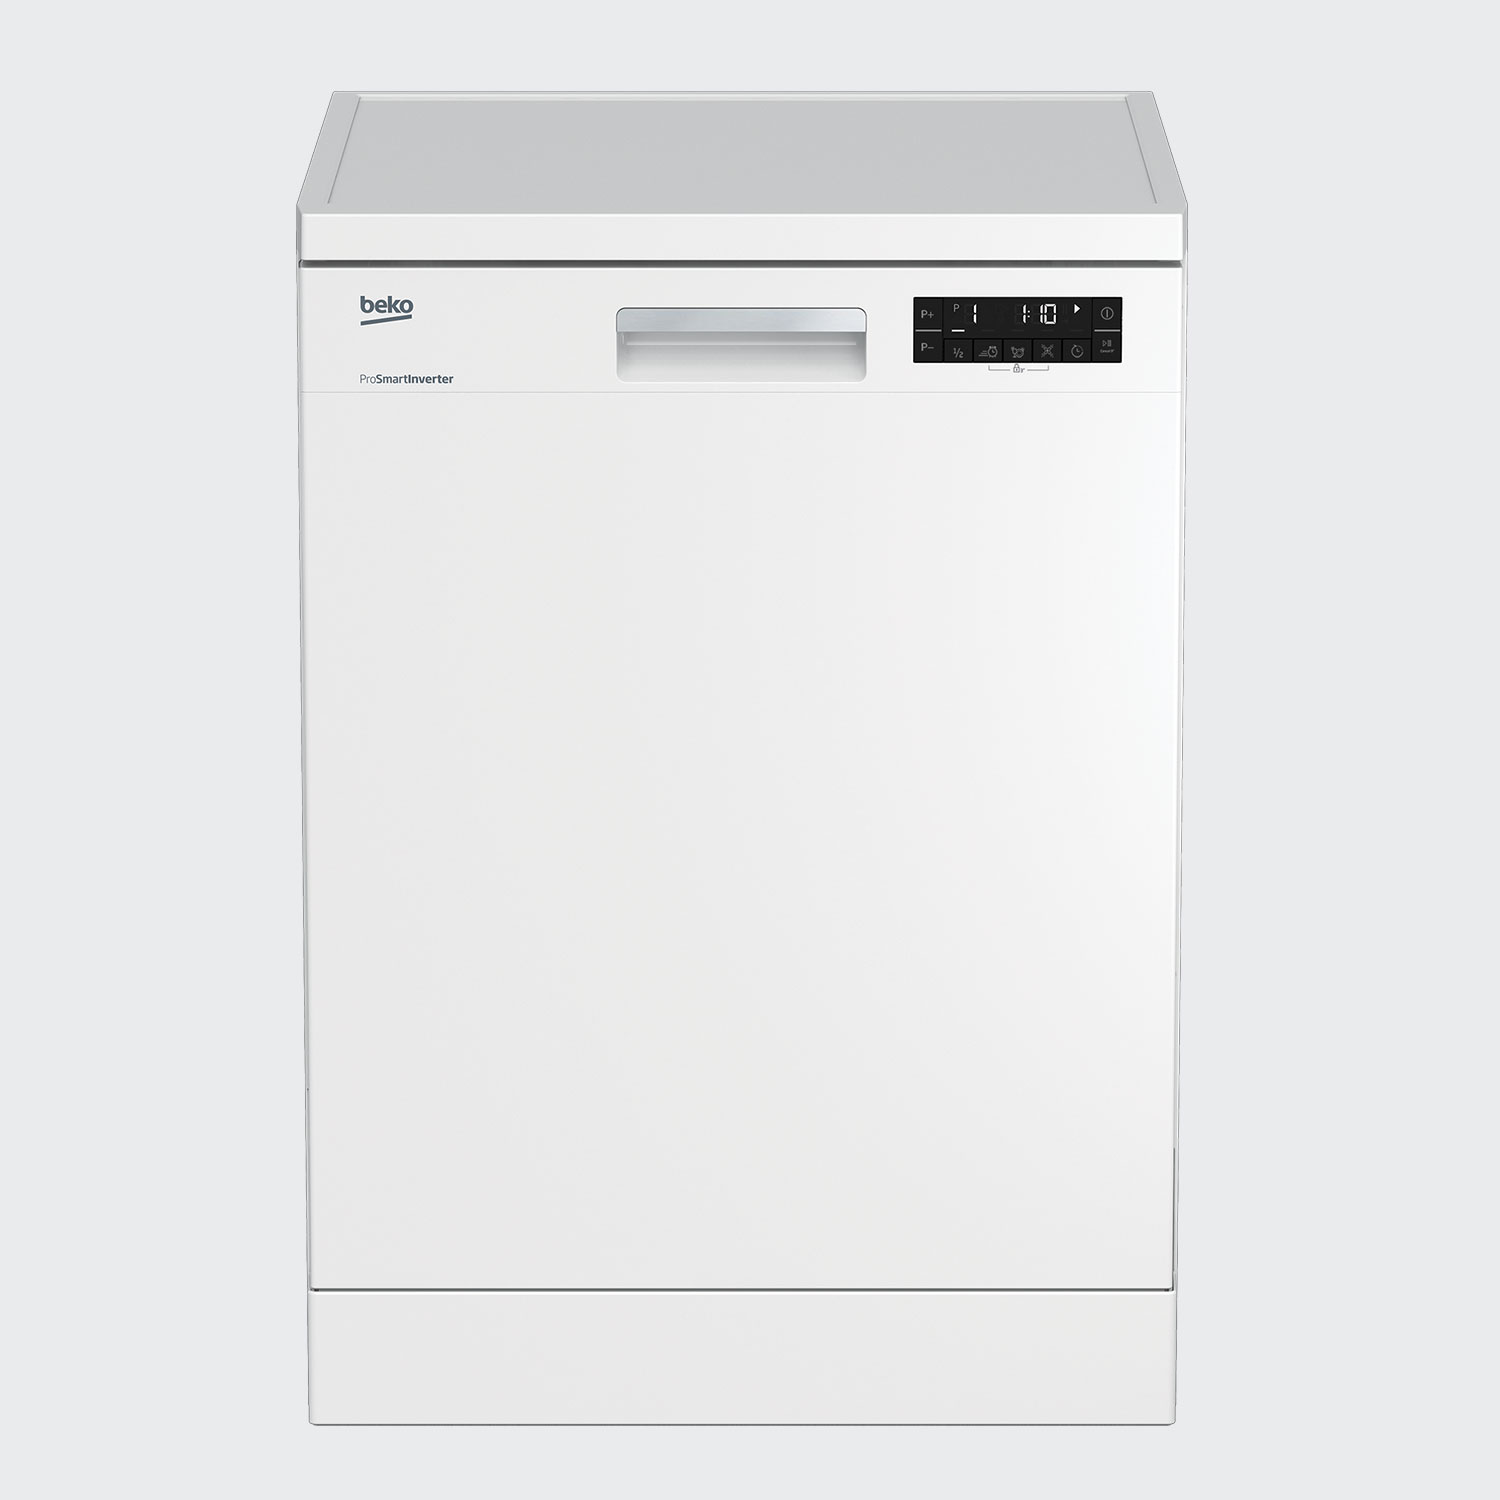 نکته خرید - قیمت روز ماشین ظرفشویی بکو مدل dfn28424w خرید